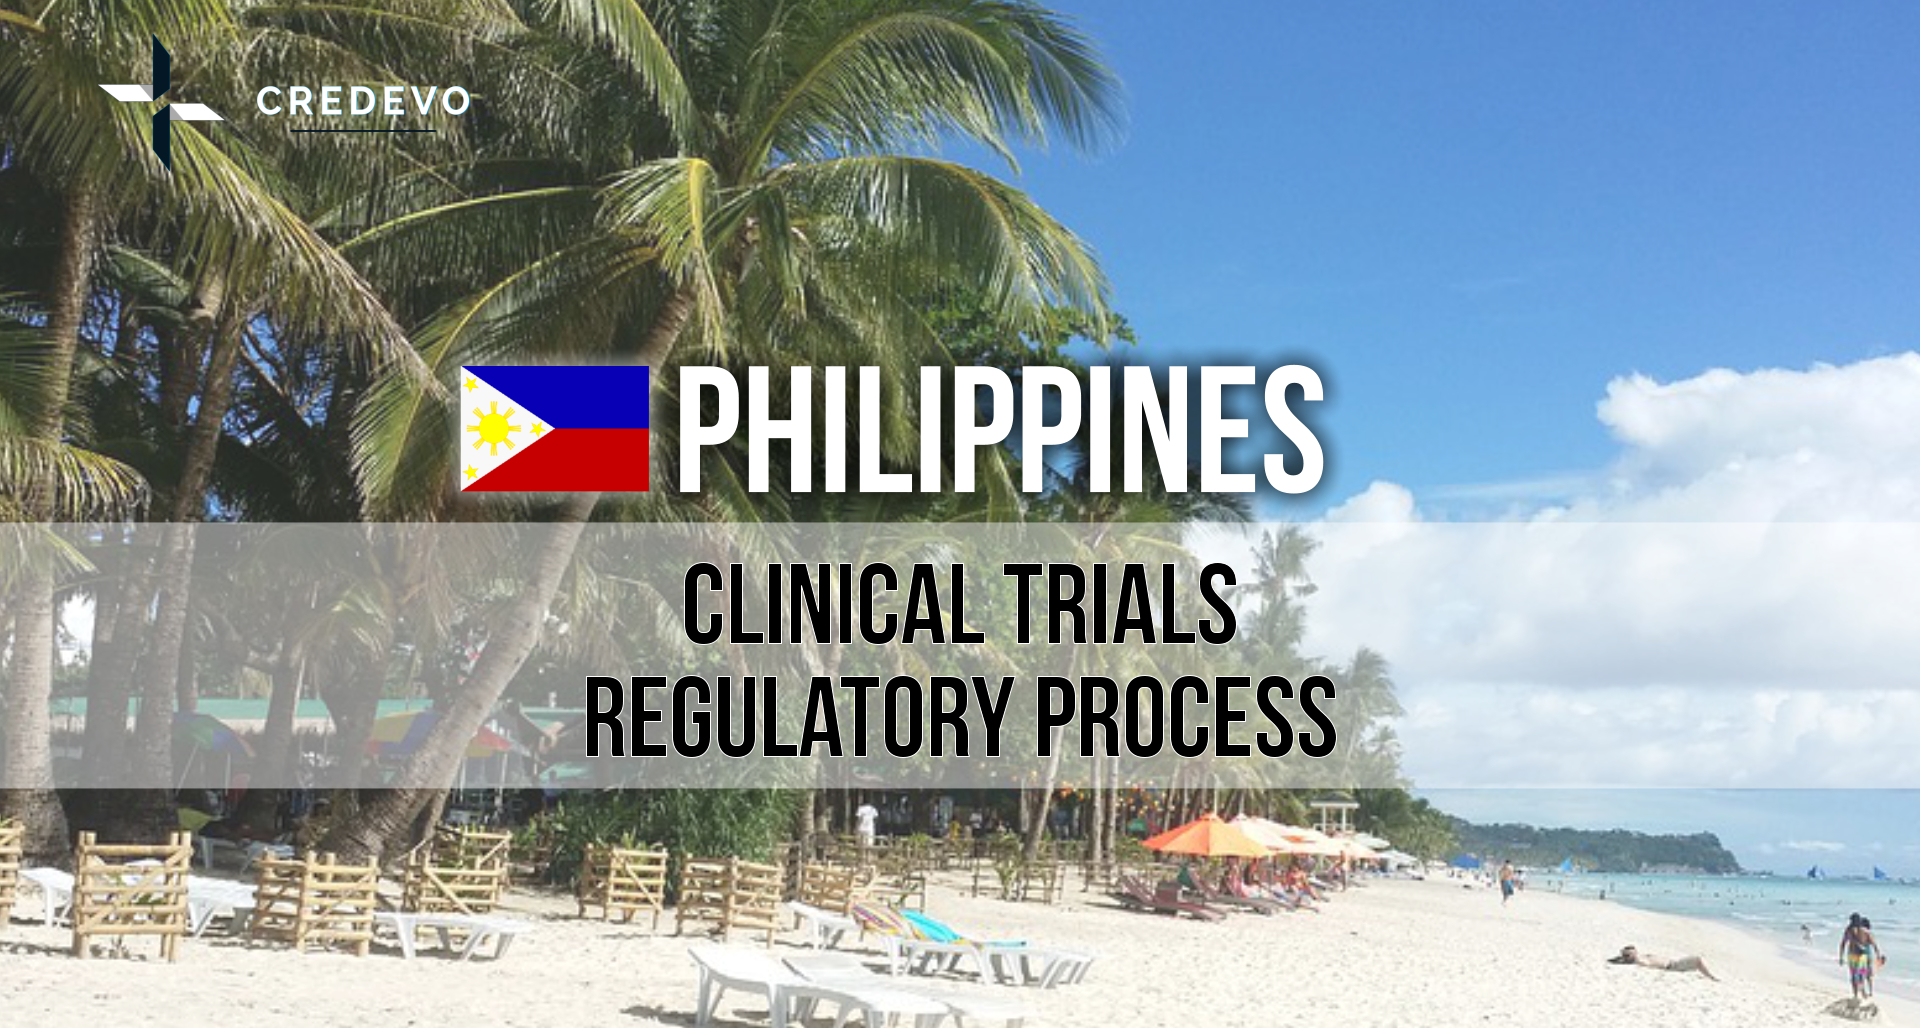 trial techniques philippines pdf